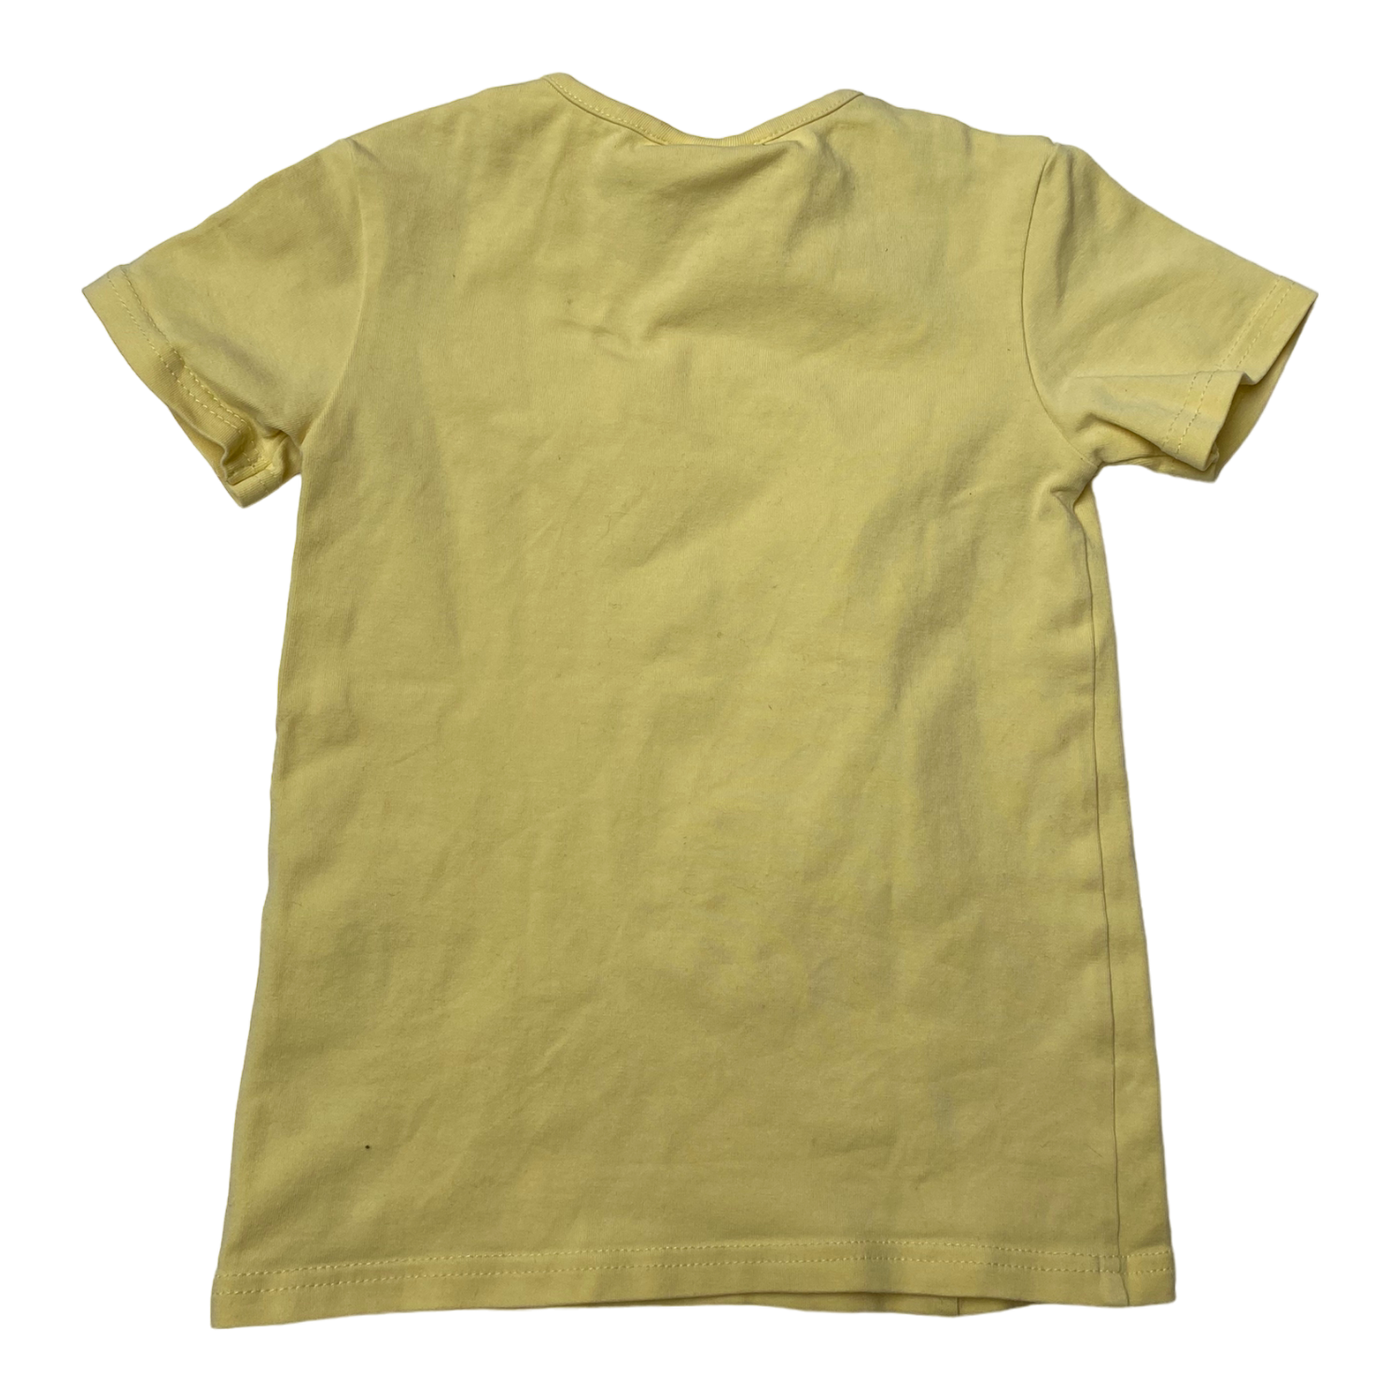 Gugguu t-shirt, lemon chiffon | 92cm